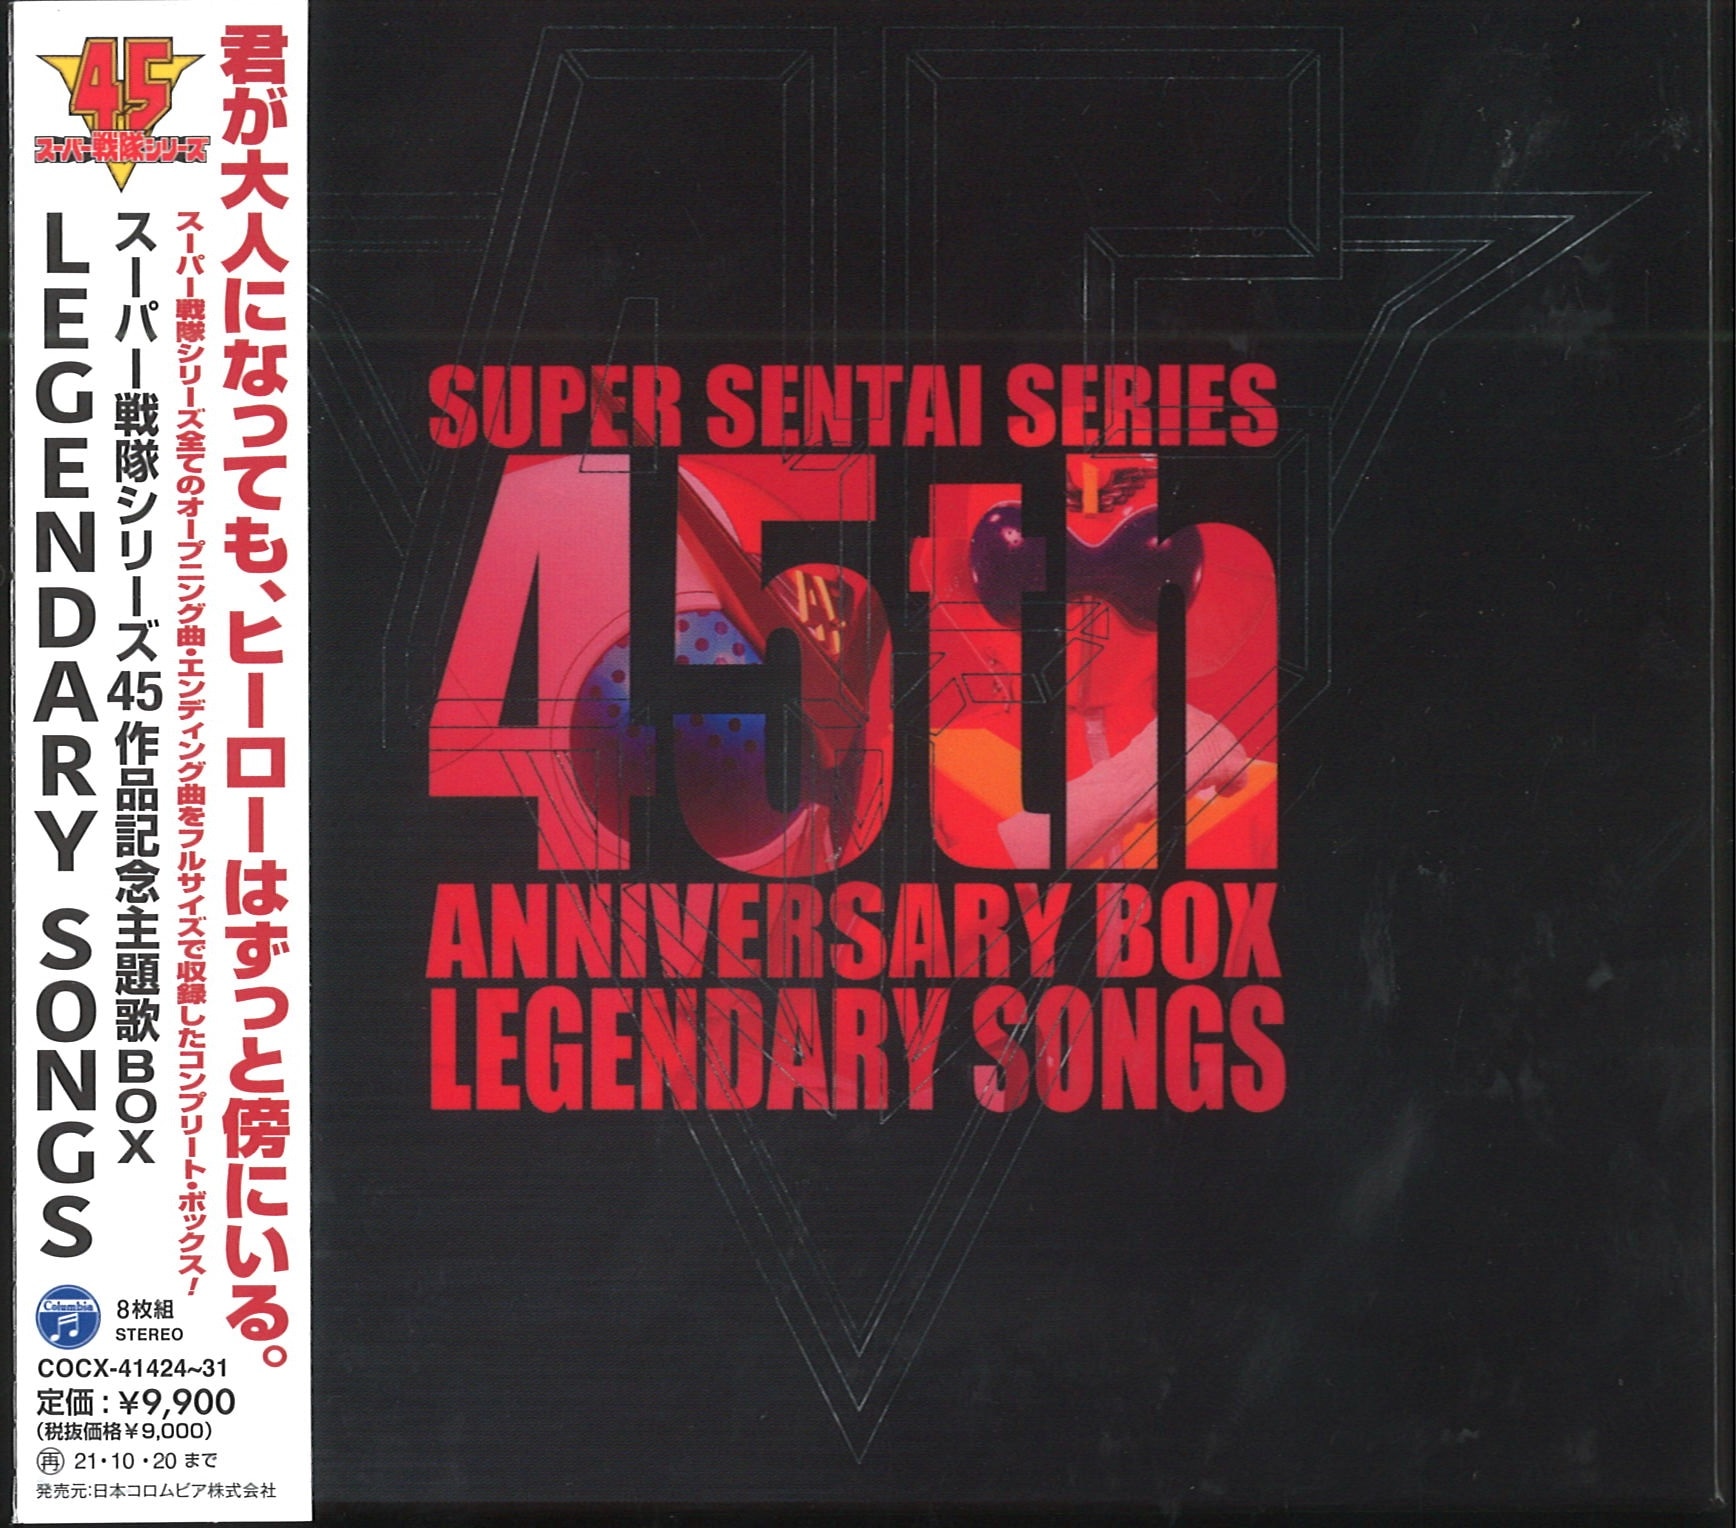 CD>スーパー戦隊 スーパー戦隊シリーズ45作品記念主題歌BOX LEGENDARY 